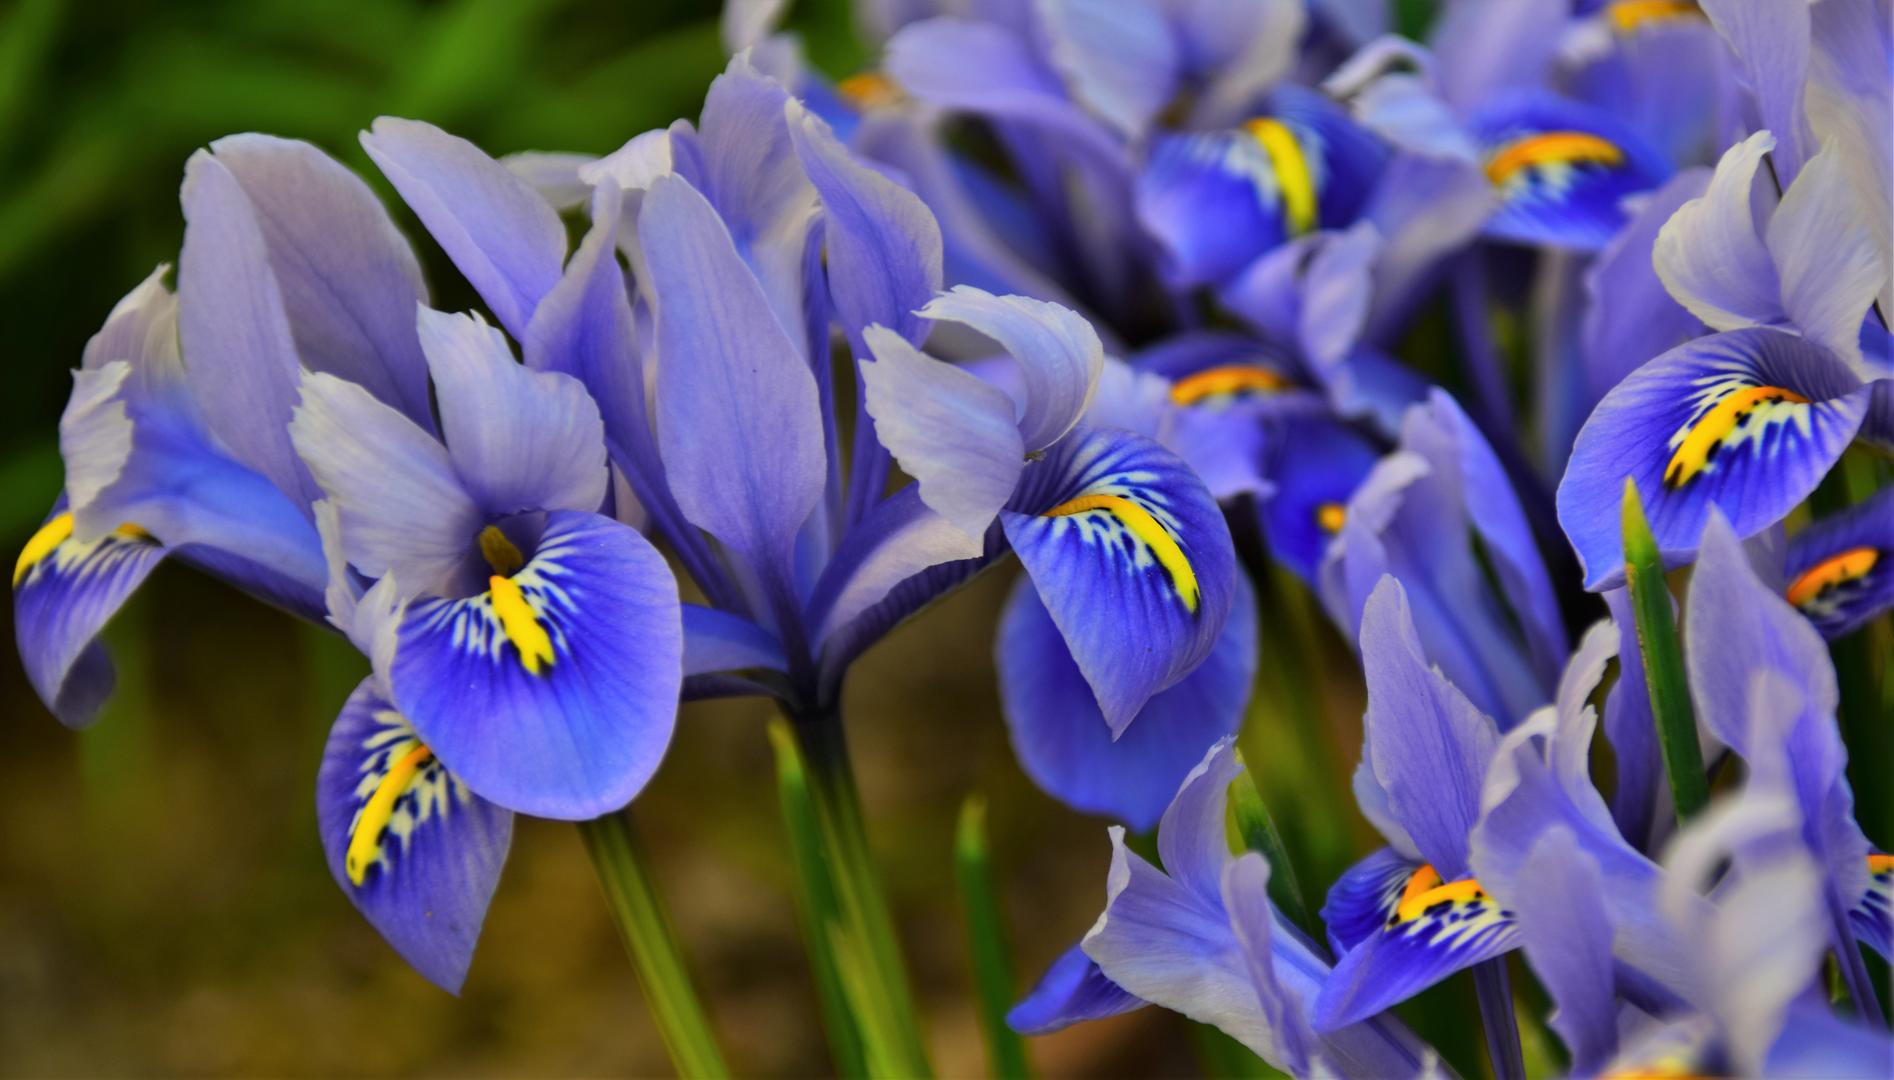 20. Hrvatski nacionalni cvijet je perunika, točnije Iris Croatica, koja je zaštićena i smatra se simbolom prirodne ljepote zemlje.